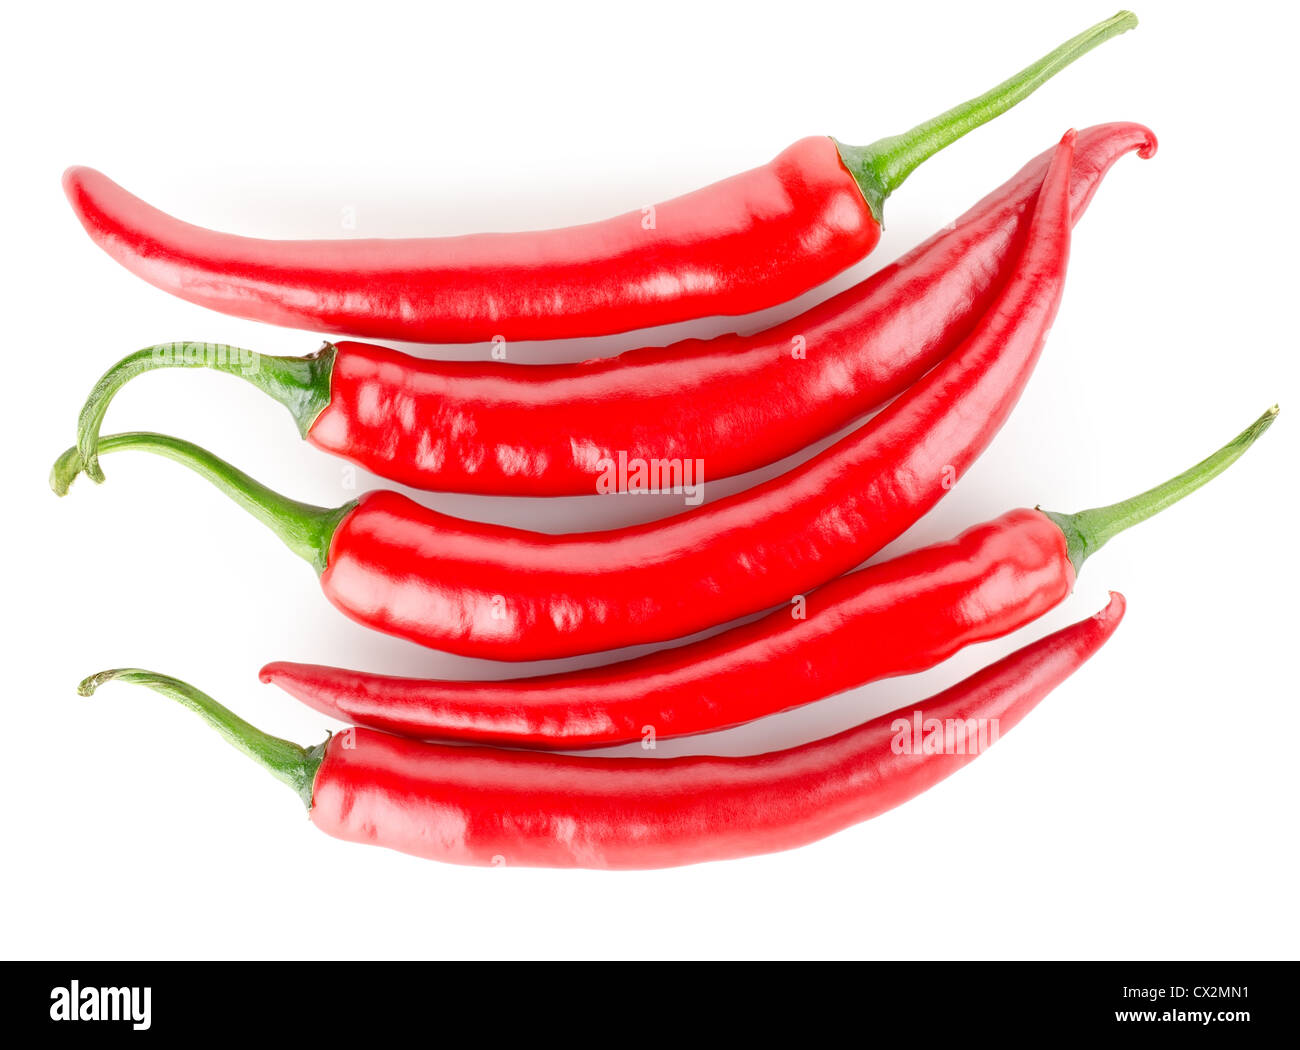 Hot Chili Peppers isolato su uno sfondo bianco Foto Stock